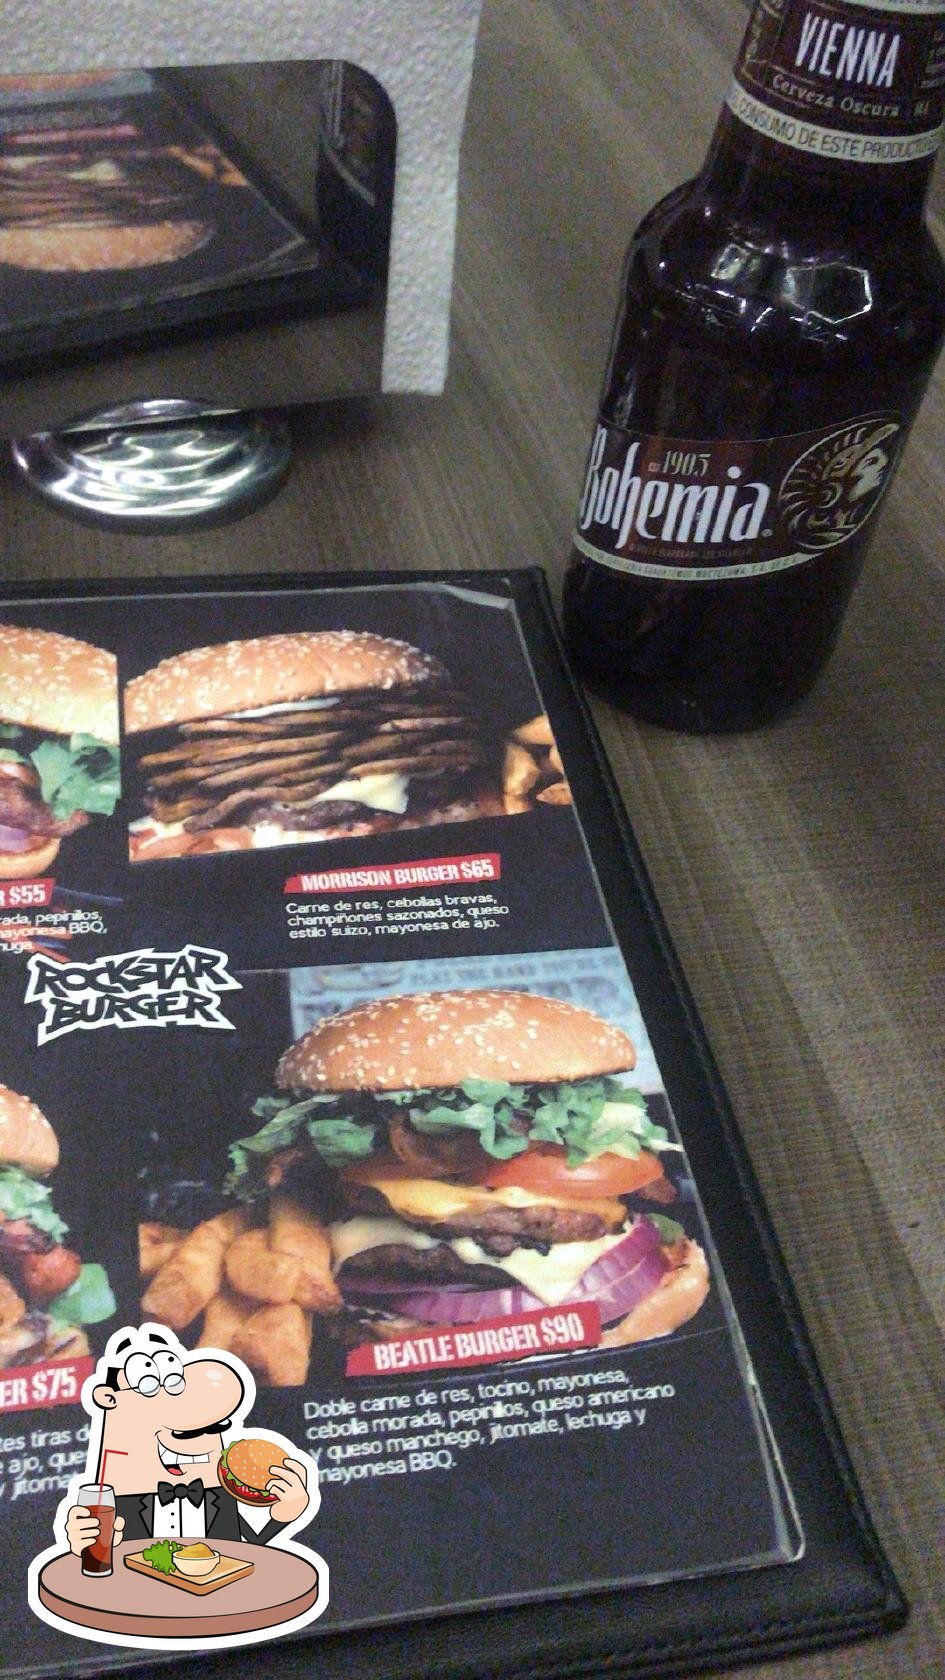 Rockstar Burger Leon C Francisco I Madero 802 Fast Food Menu And Reviews 